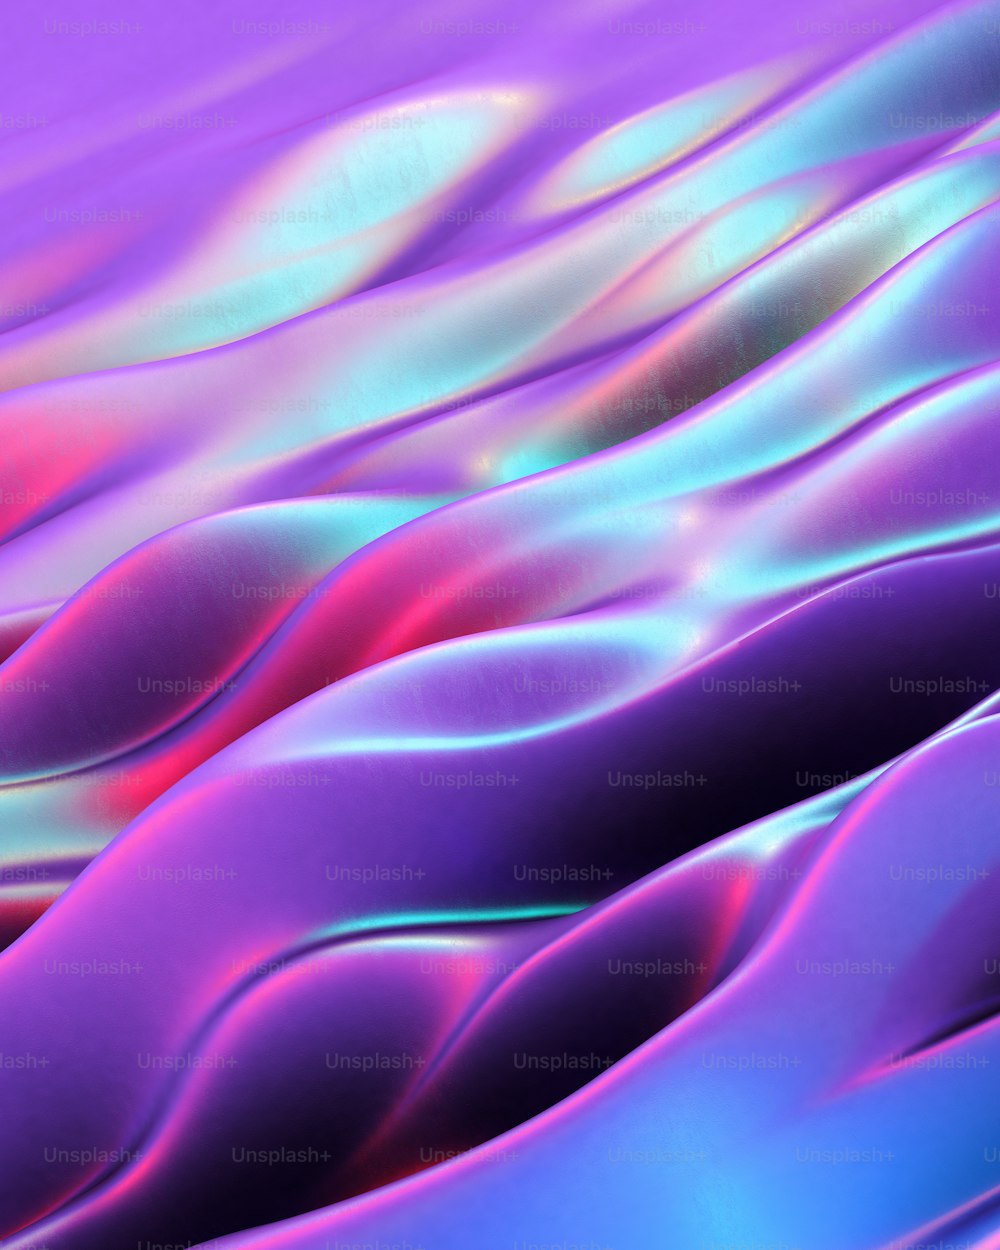 Ein computergeneriertes Bild von Wellenlinien